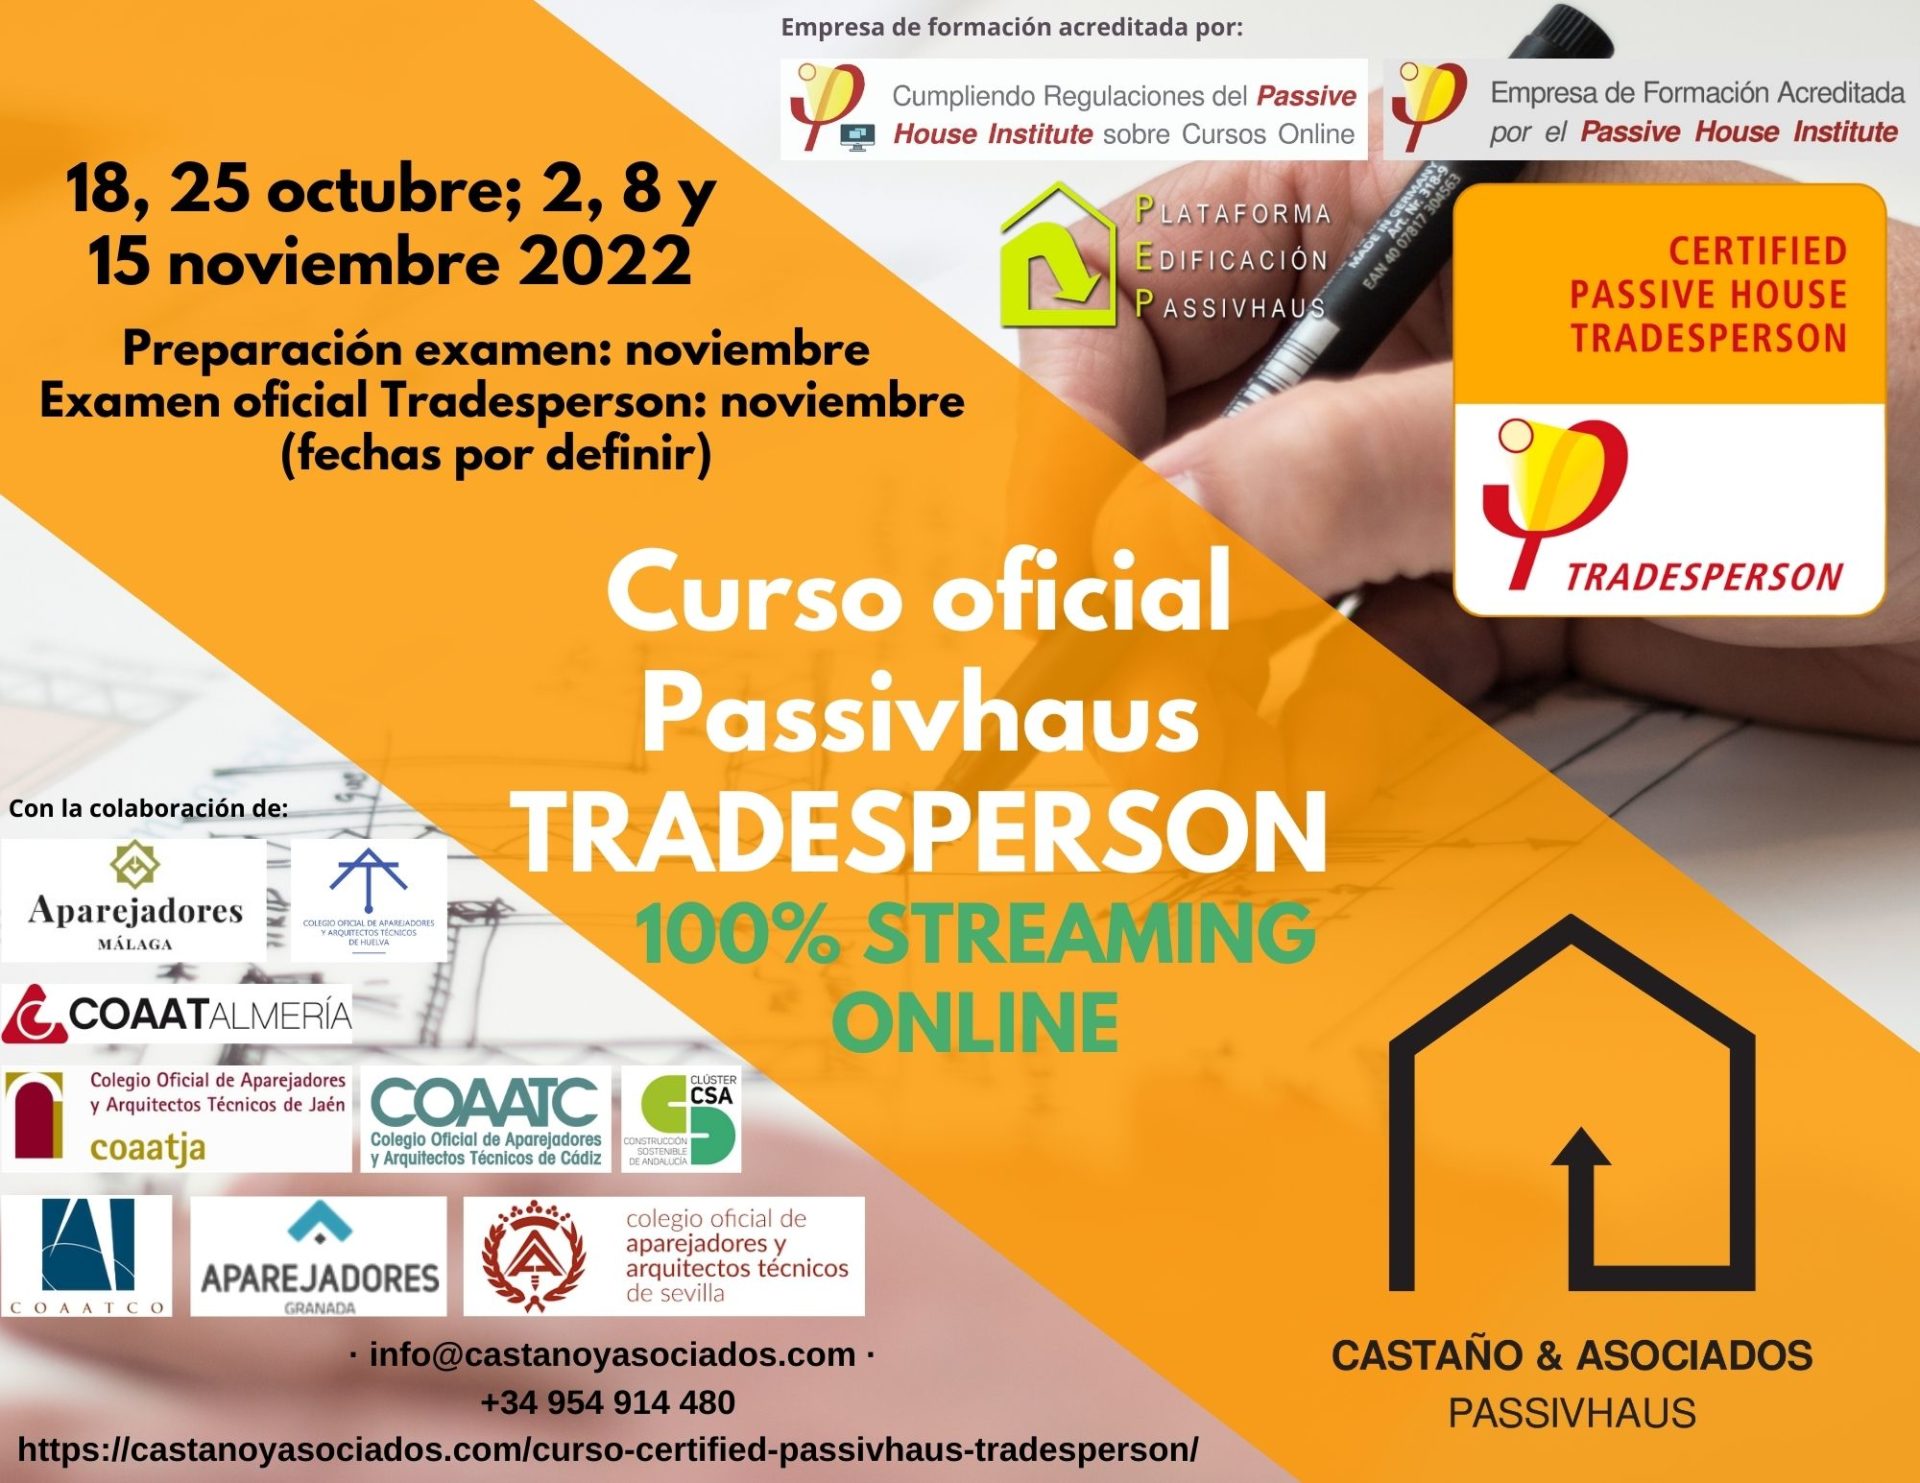 Curso oficial Passivhaus Tradesperson online 100% streaming en directo - CASTAÑO&ASOCIADOS PASSIVHAUS